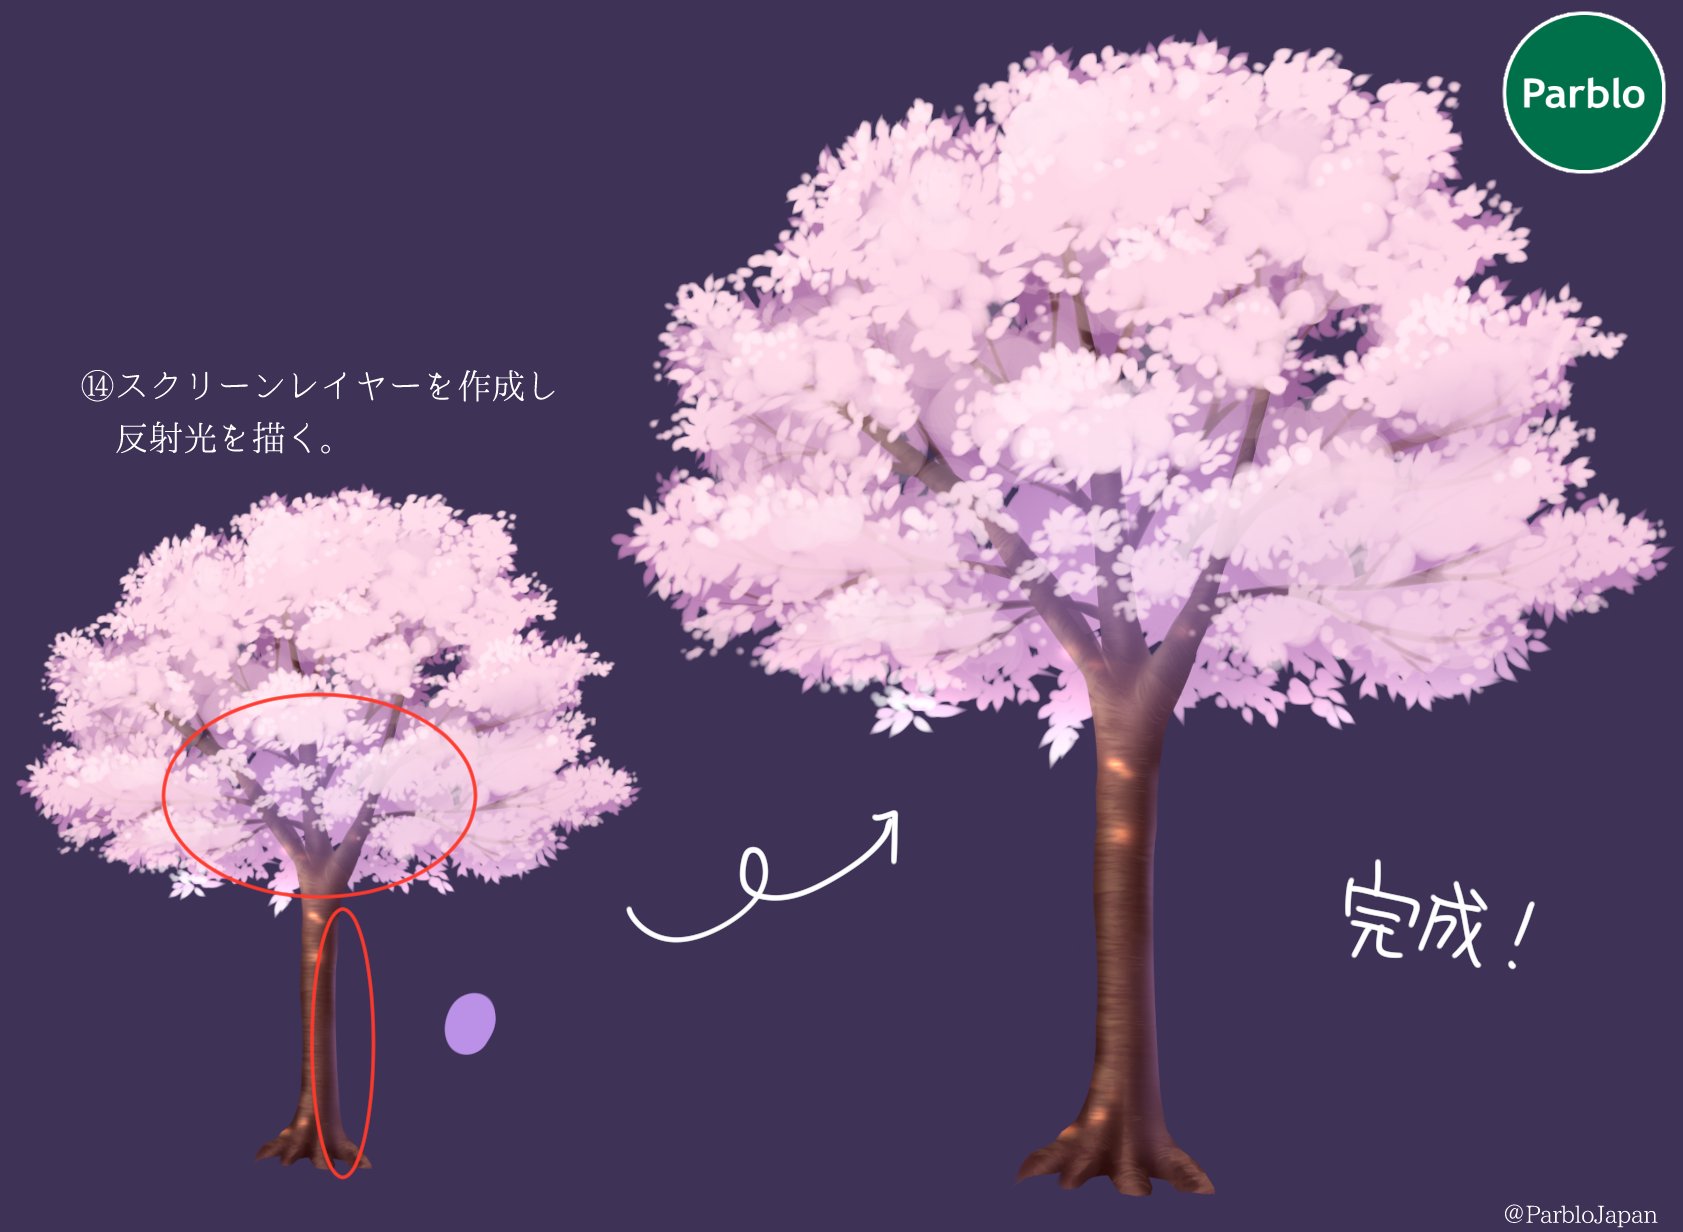 Parblo Japan イラストでお花見しよう 本日は満開の桜の描き方 桜いっぱいのイラストに挑戦してみよう イラスト好きと繋がりたい 絵描きさんと繋がりたい Parblo T Co 5nkkmpmcyr Twitter